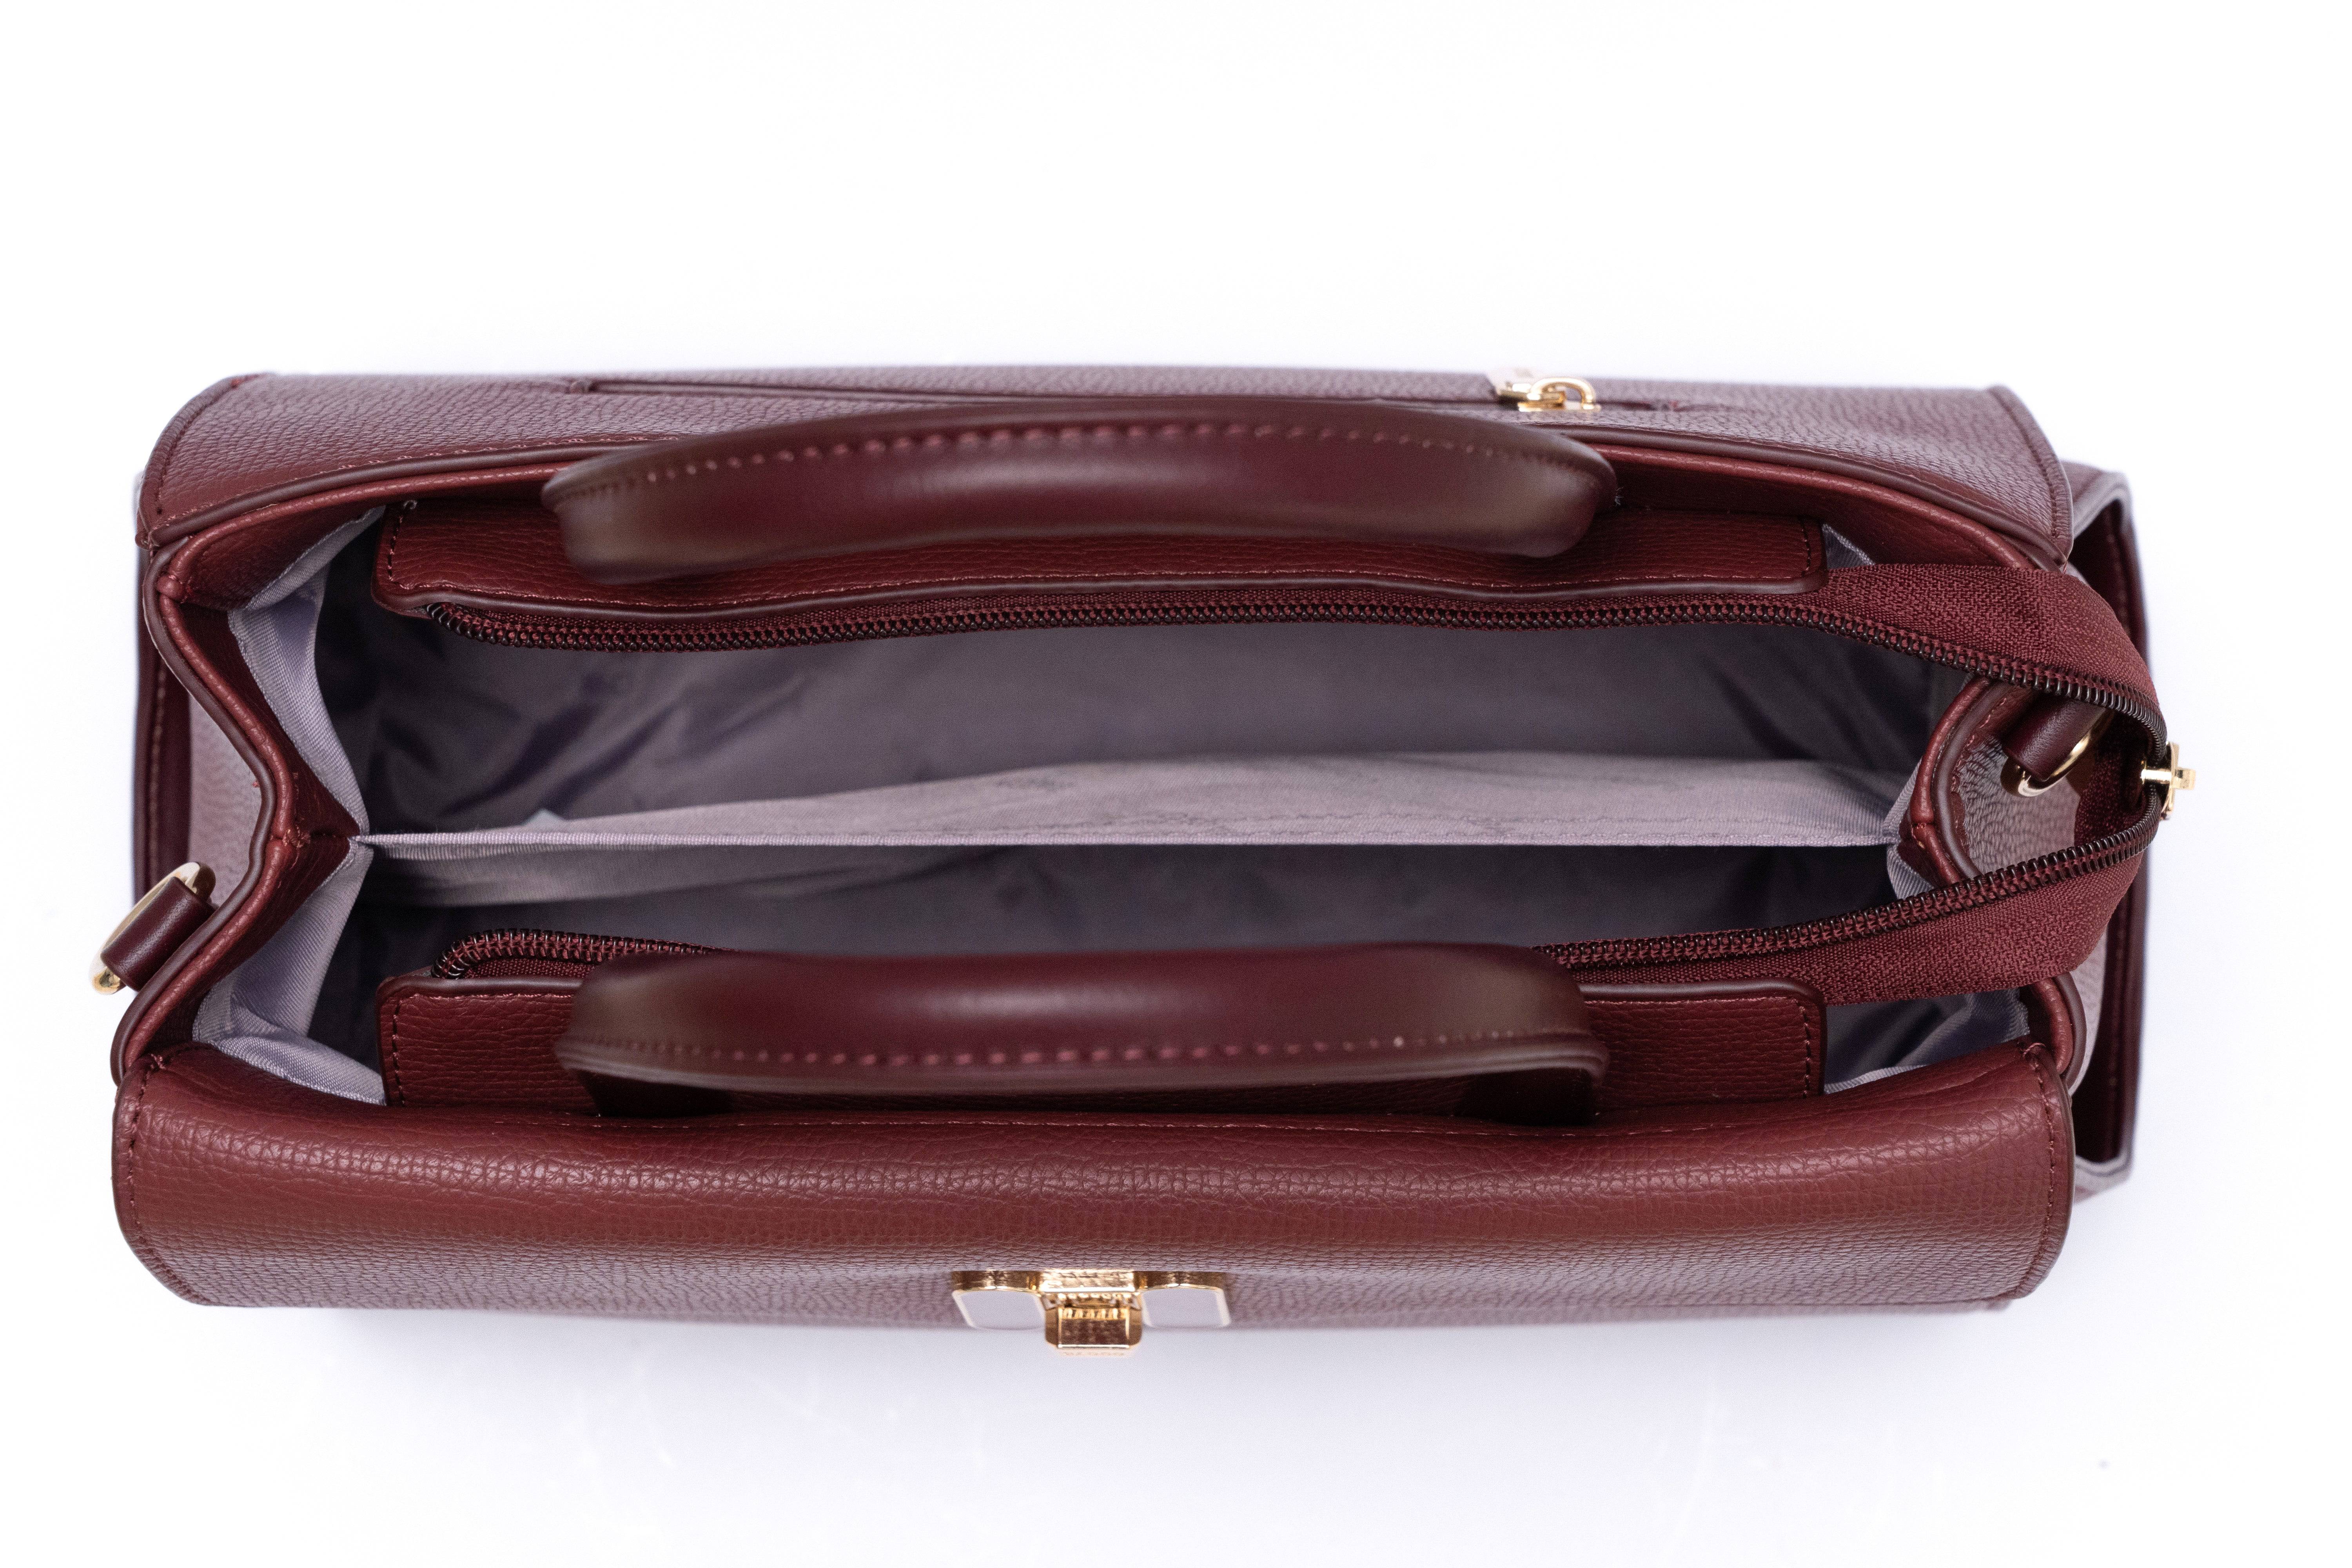 حقيبة يد نسائية متوسطة الحجم بتصميم جذاب أنيق جداً بيد متوسطة وحزام طويل باللون الاسود - KSA